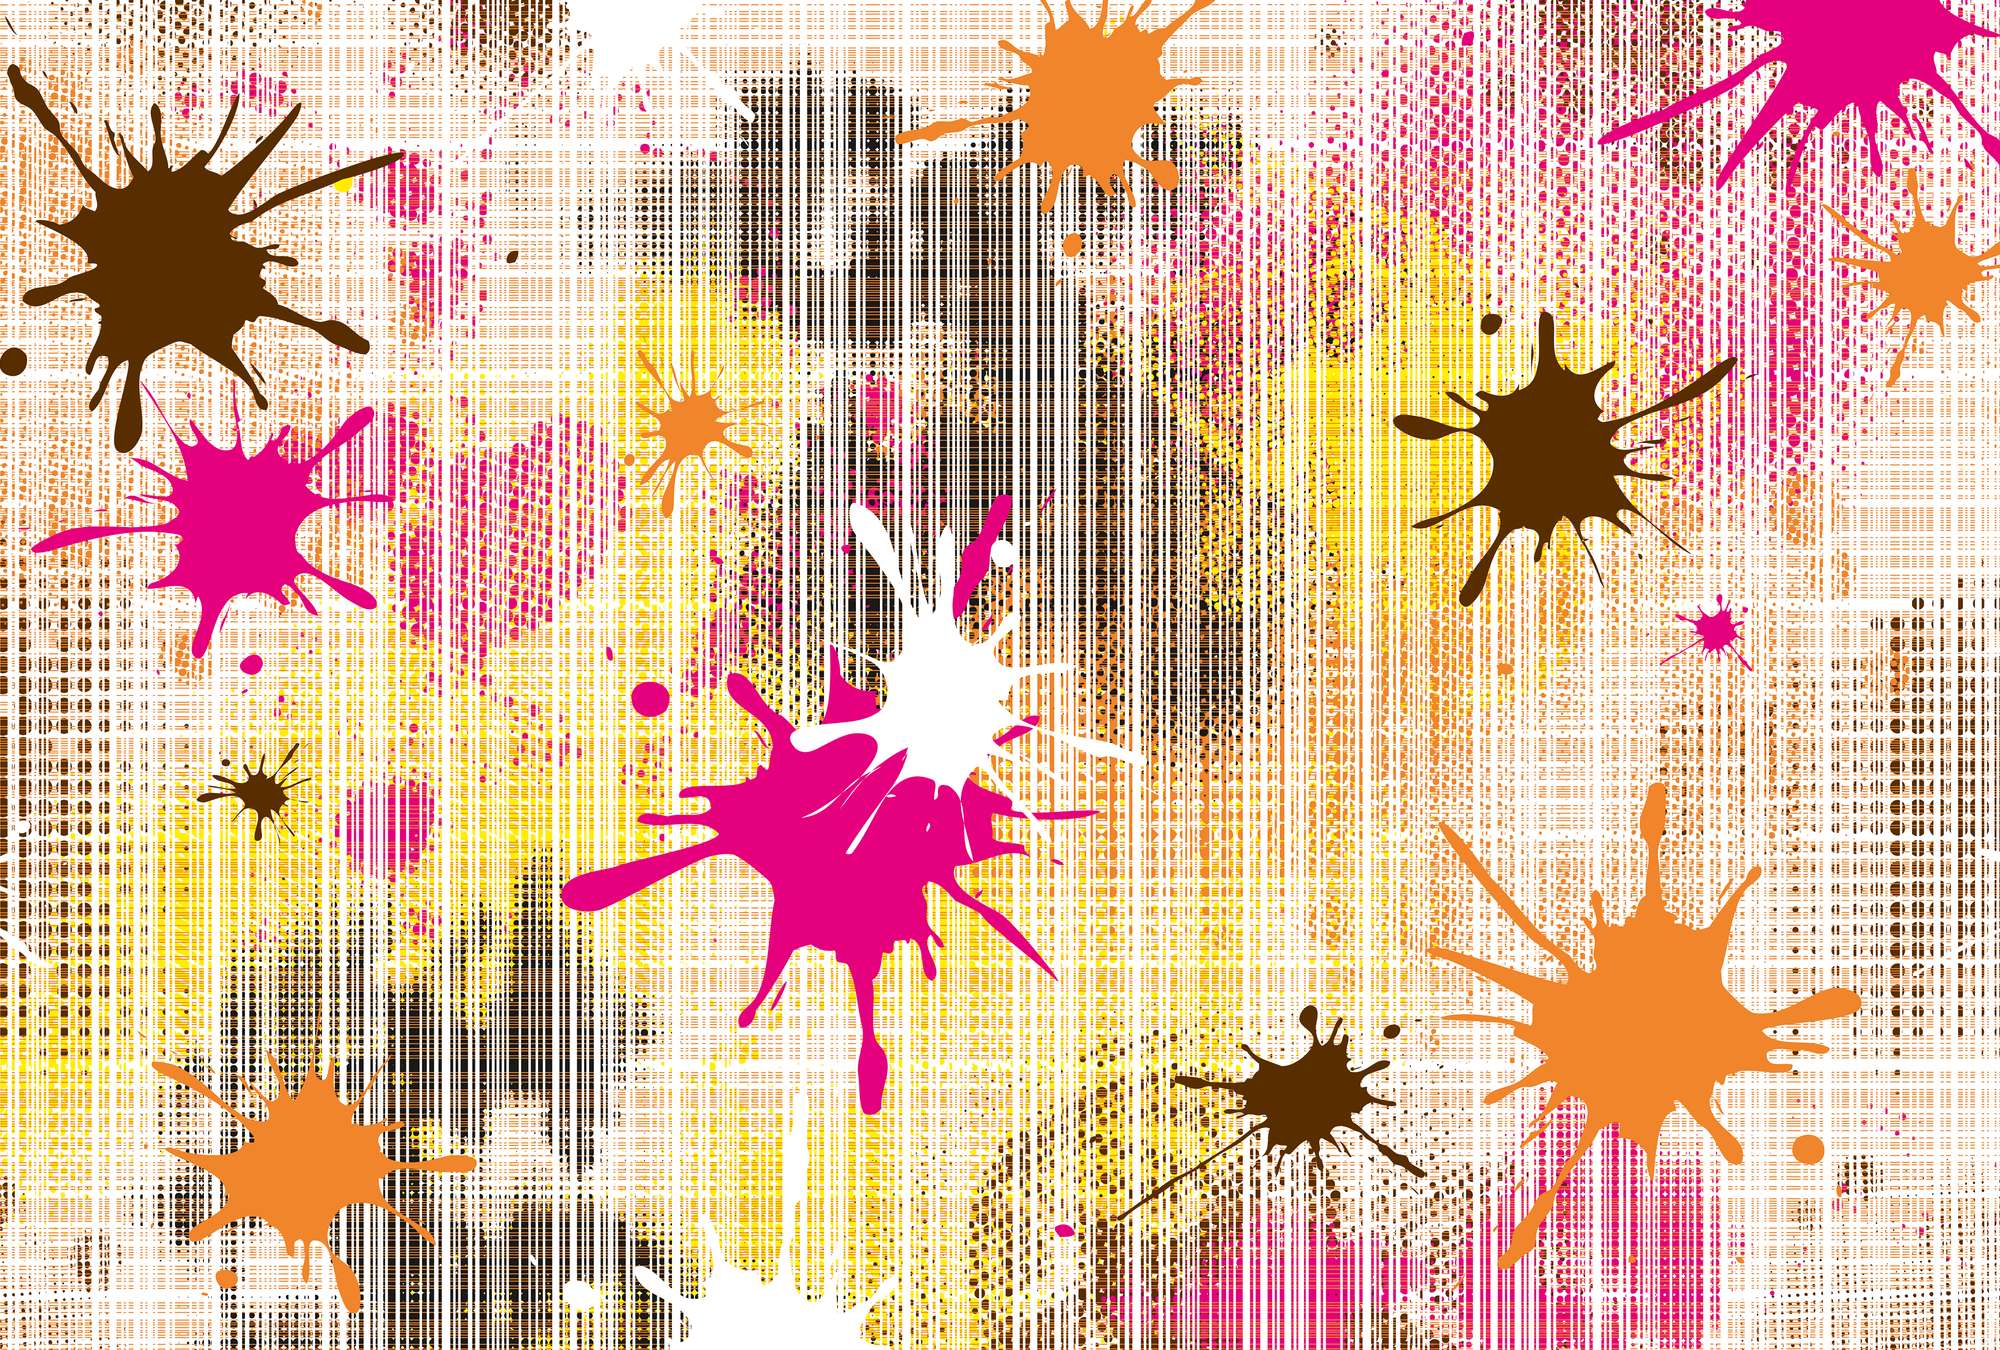             Muurschildering grafisch ontwerp met kleurrijke verfspatten
        